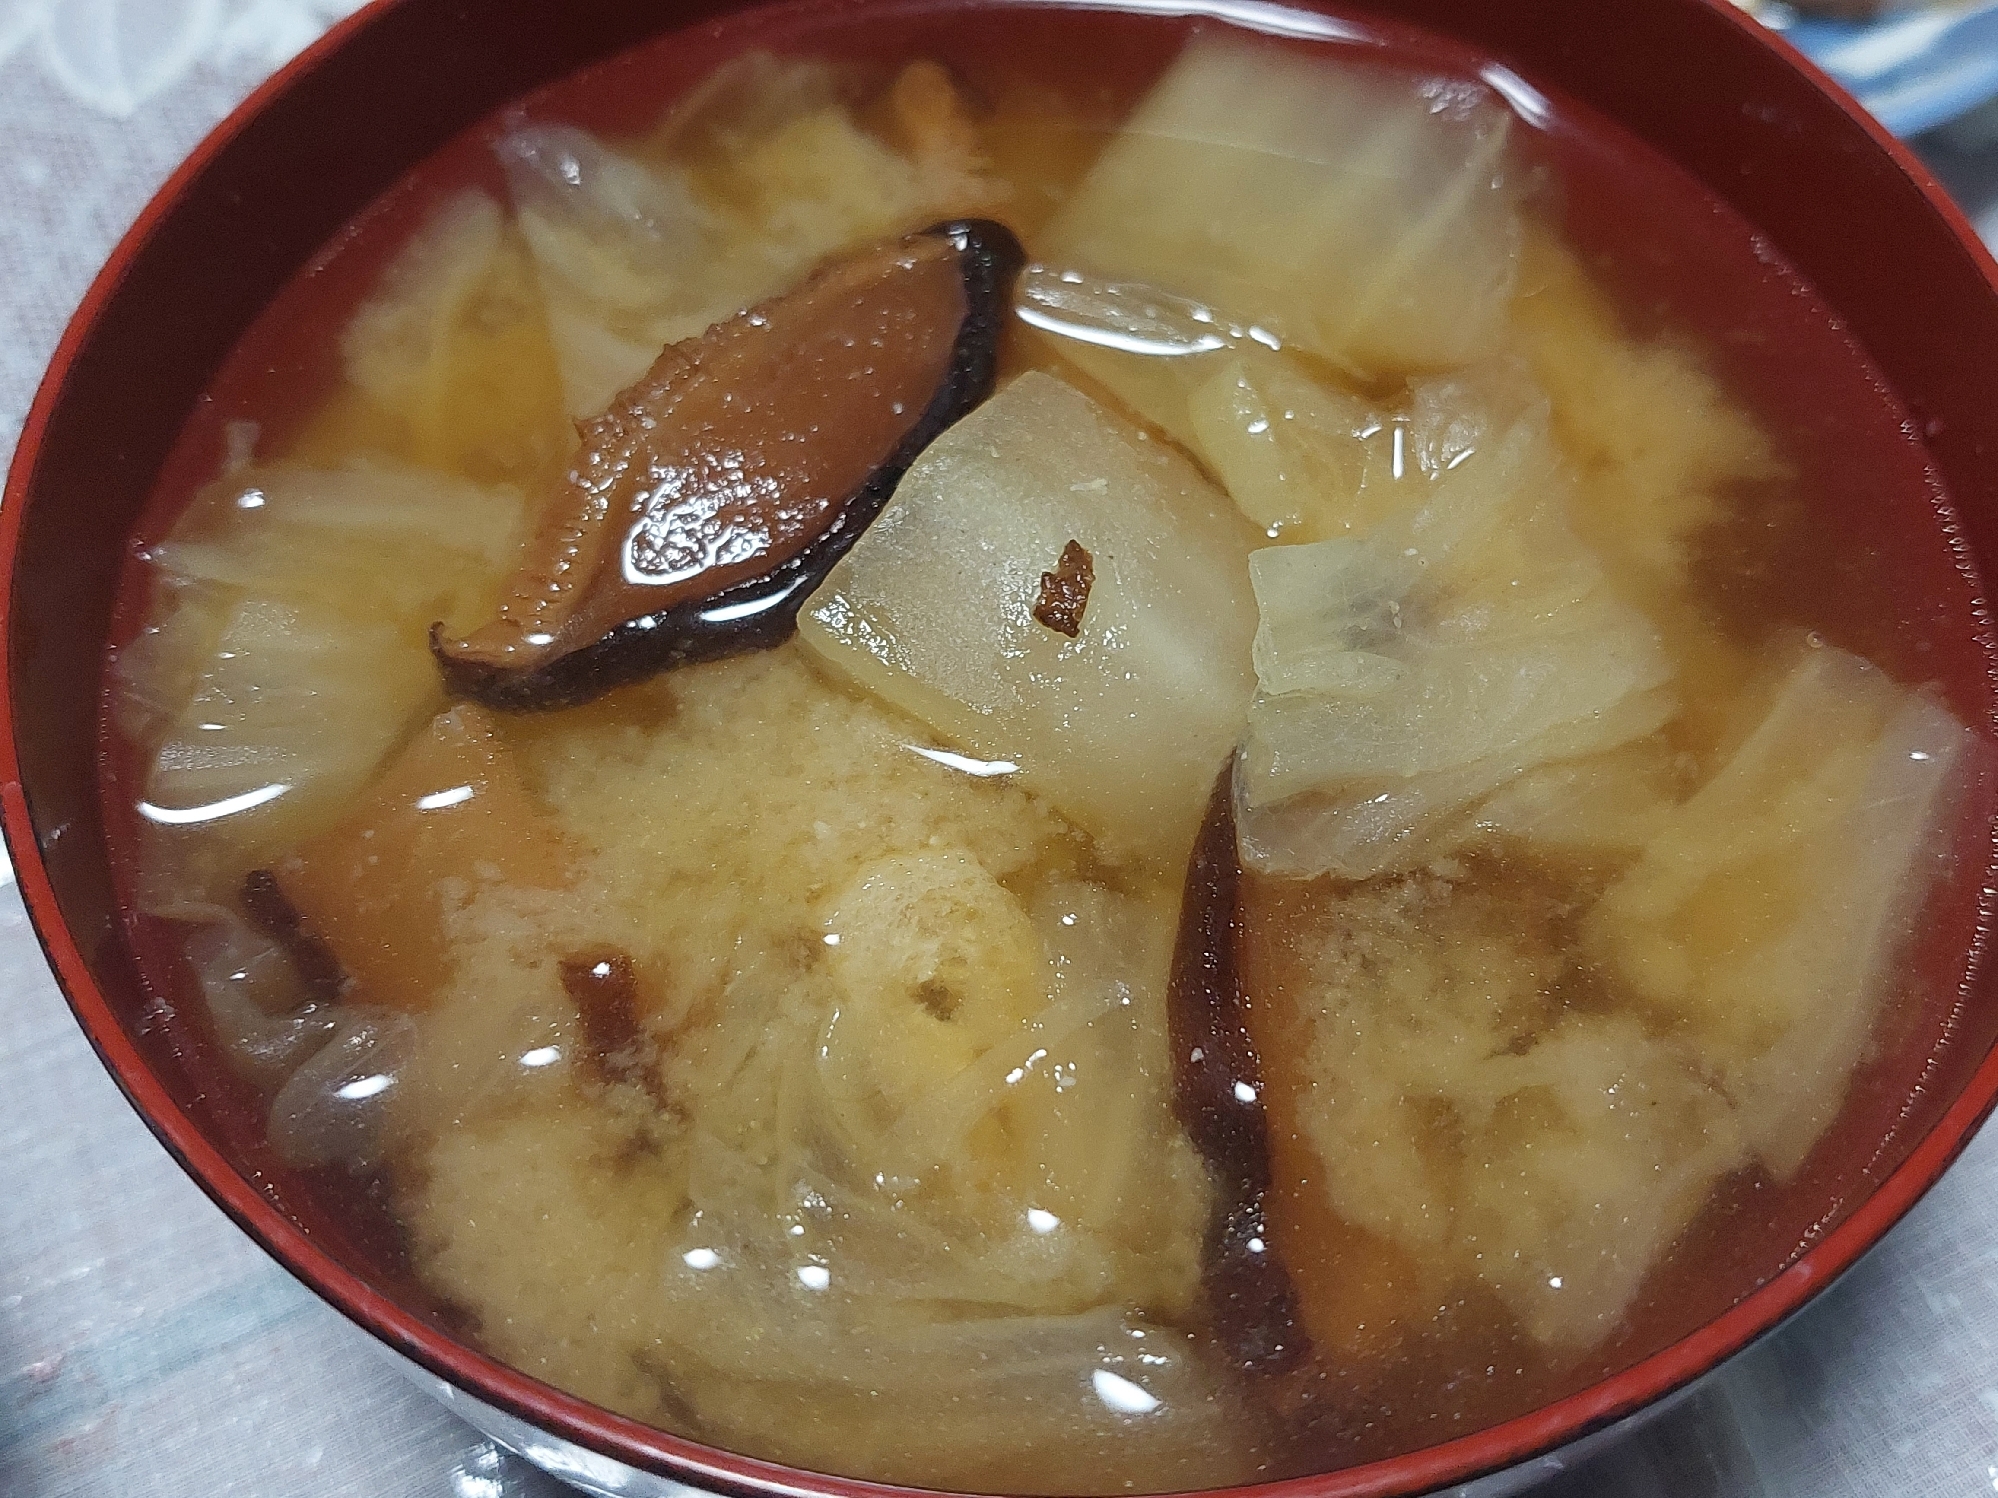 椎茸と白菜と油揚げのお味噌汁